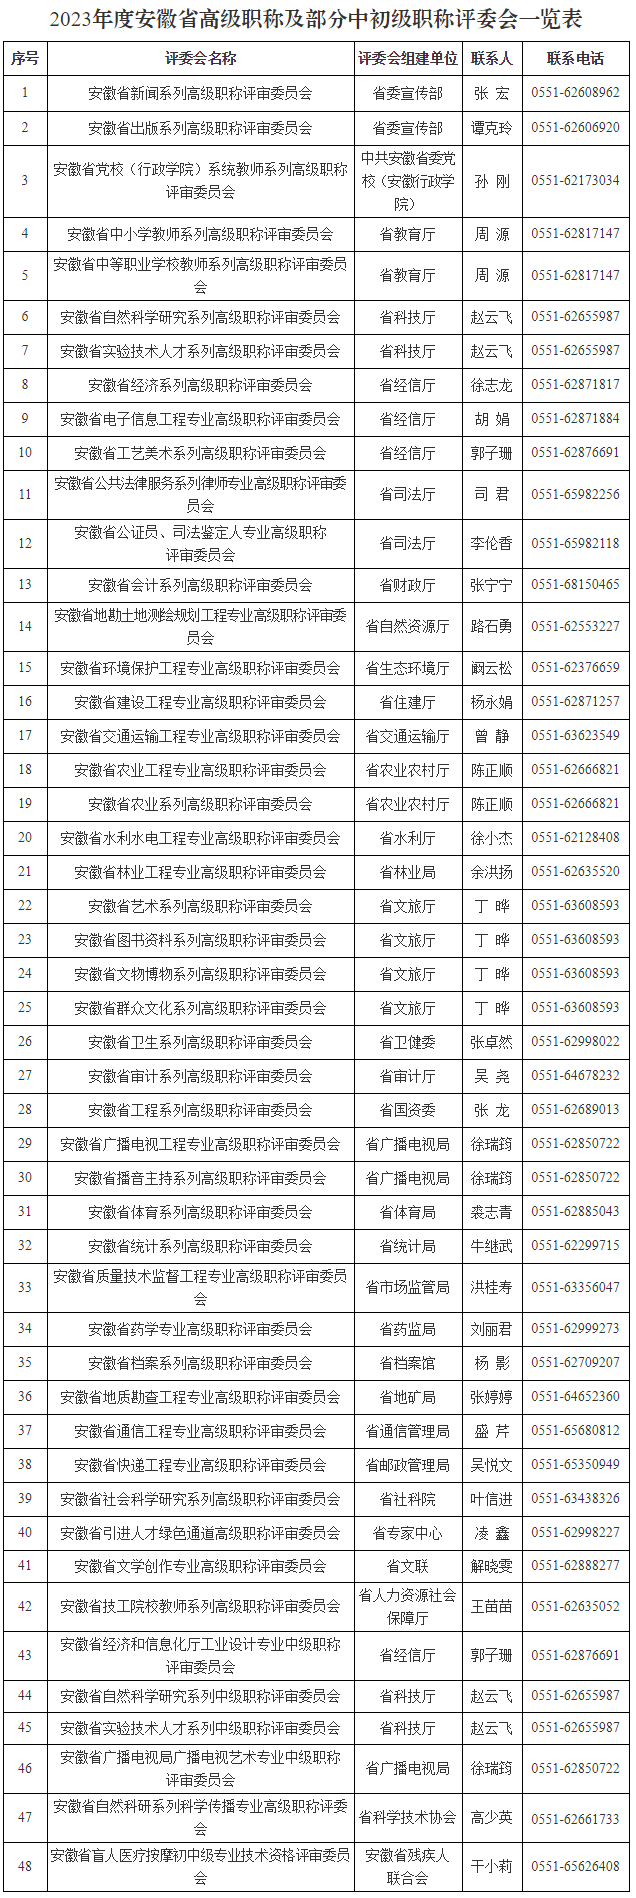 2023年度安徽省高级职称及部分中初级职称评委会一览表